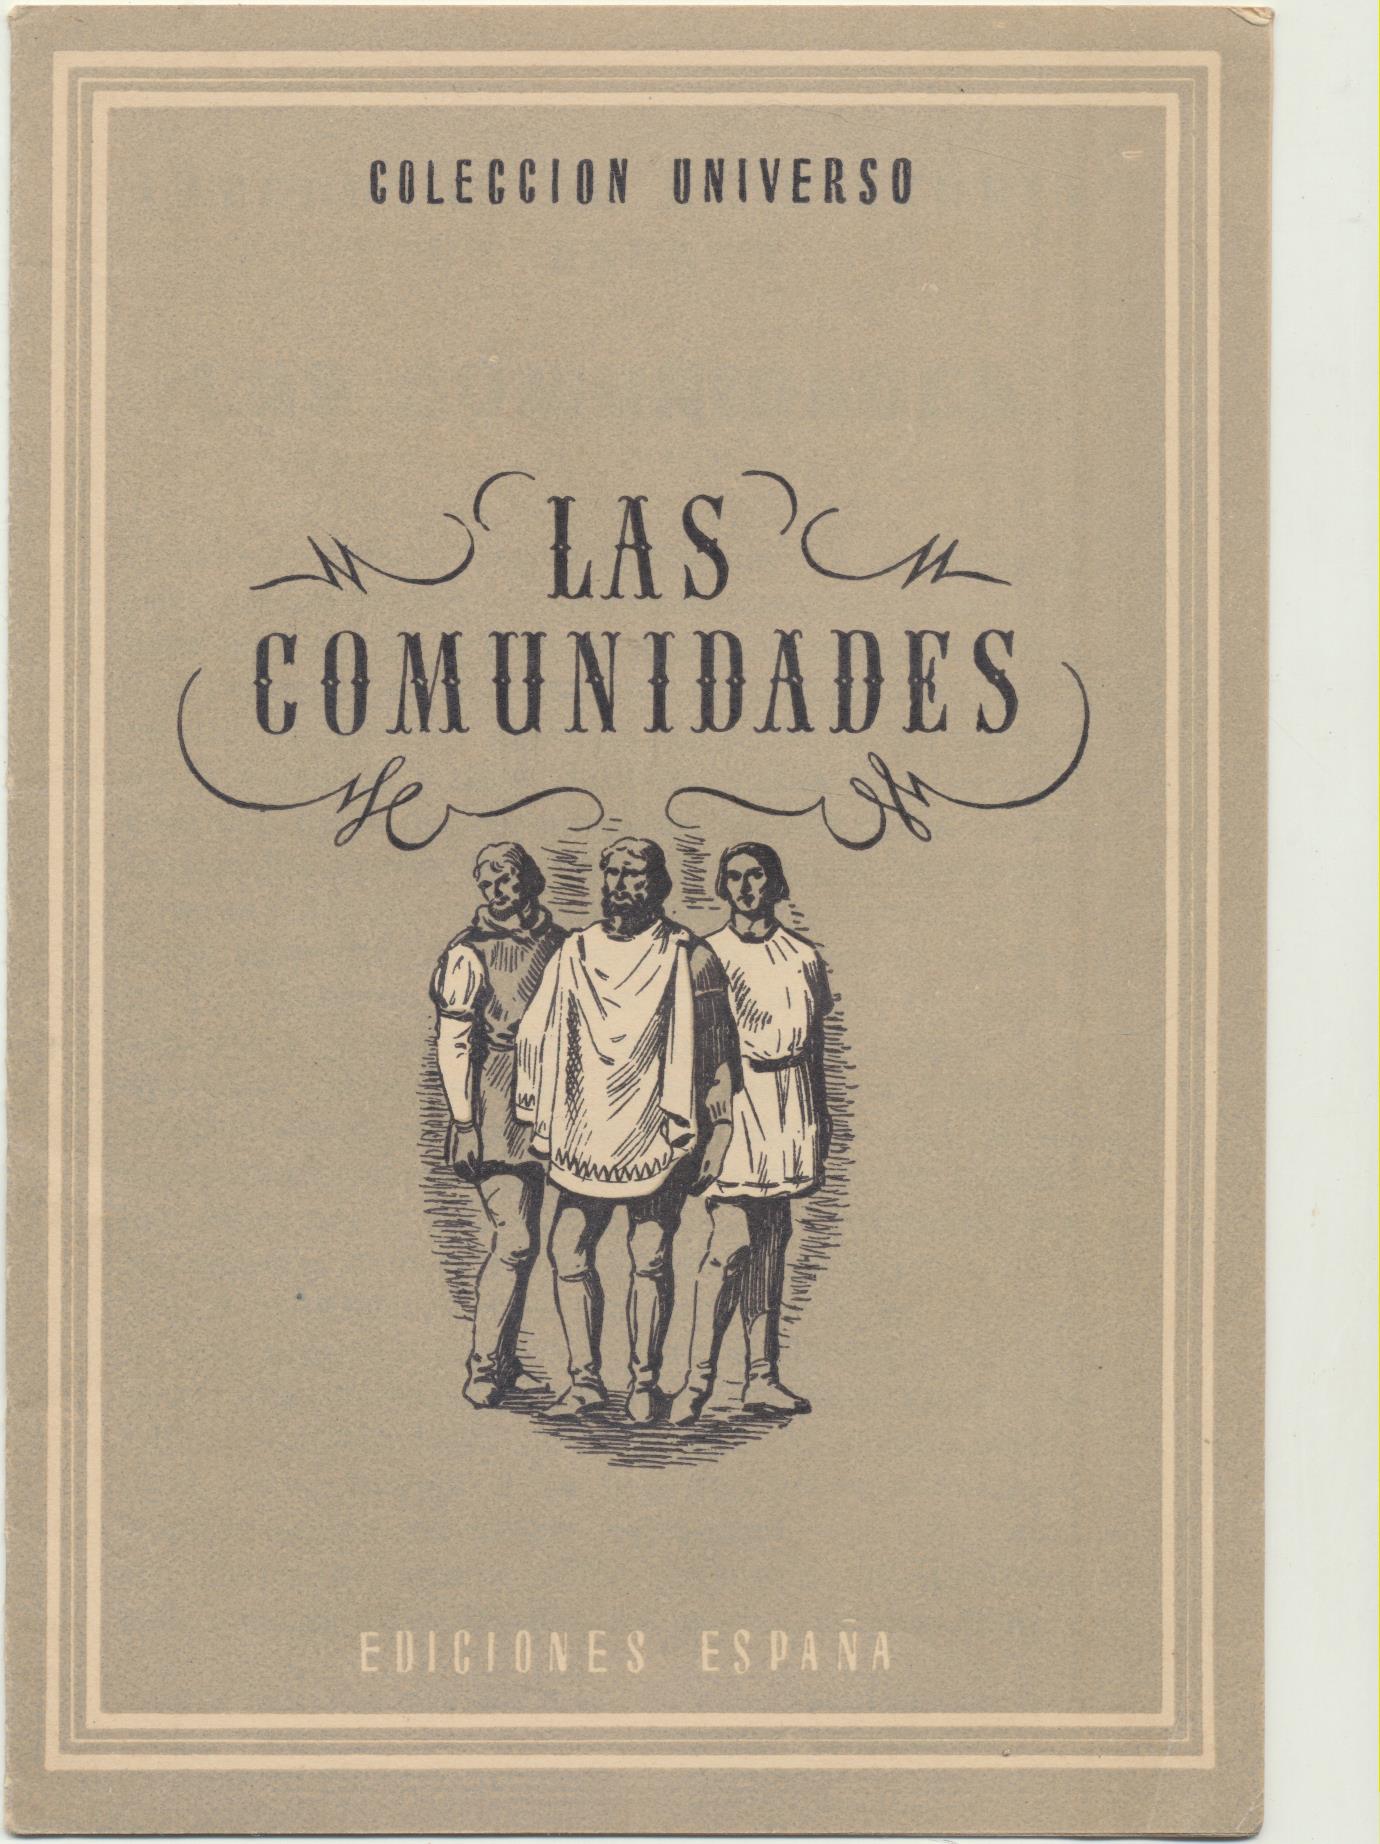 Colección Universo. Las comunidades. Ediciones España 194?